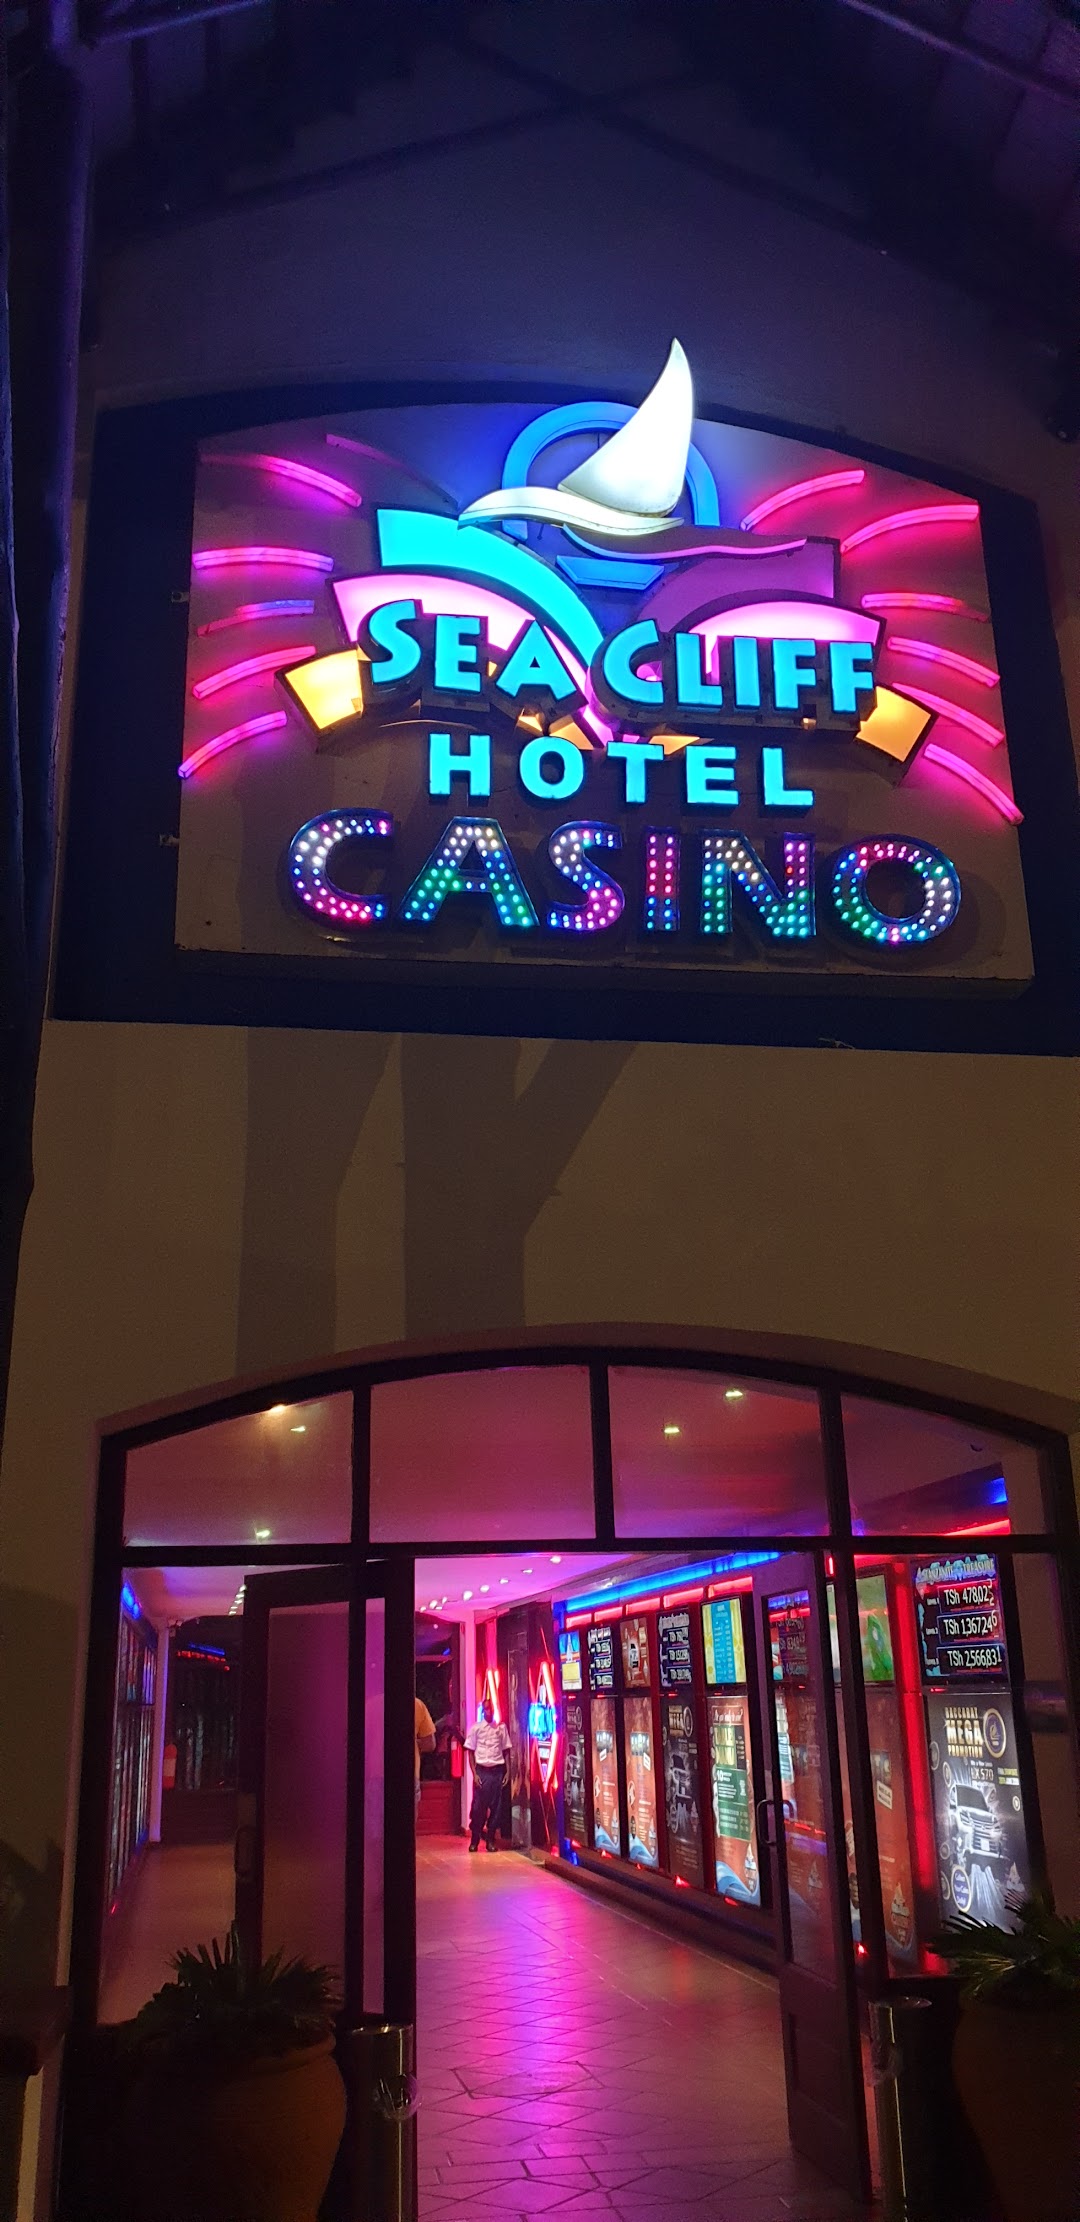 Sea Cliff Casino